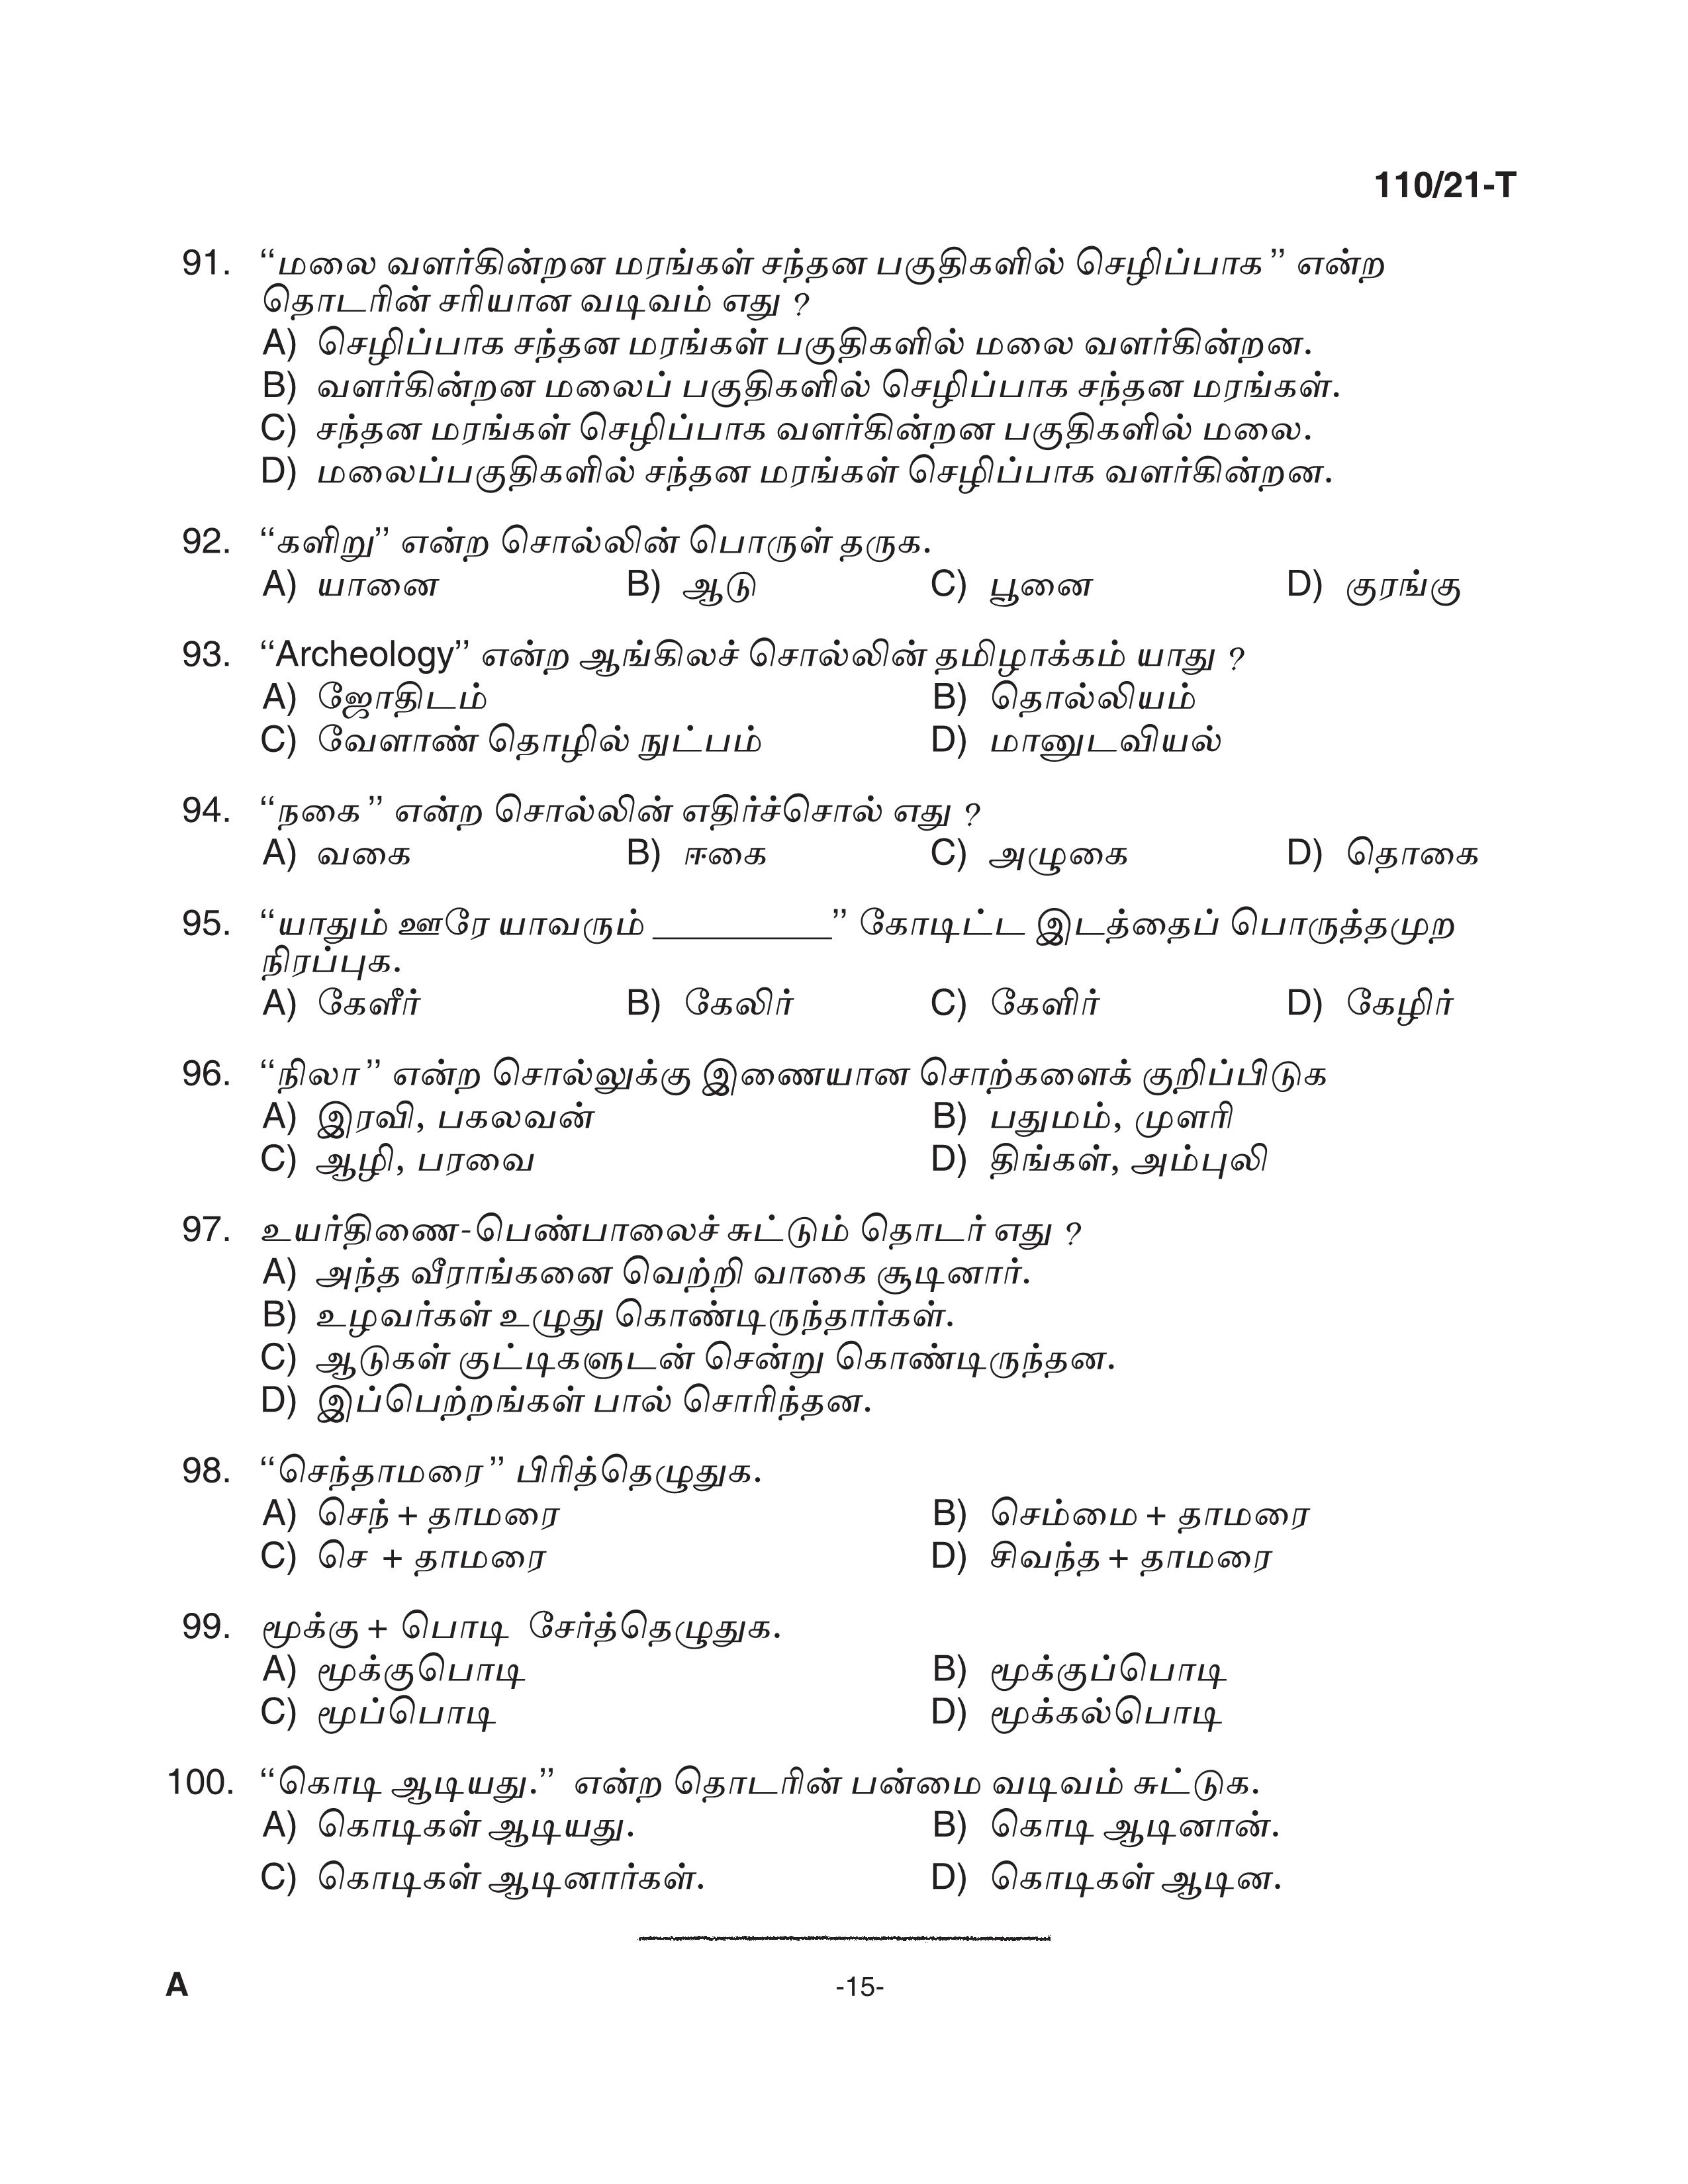 KPSC Assistant Grade II Sergeant Tamil Exam 2021 Code 1102021 T 14